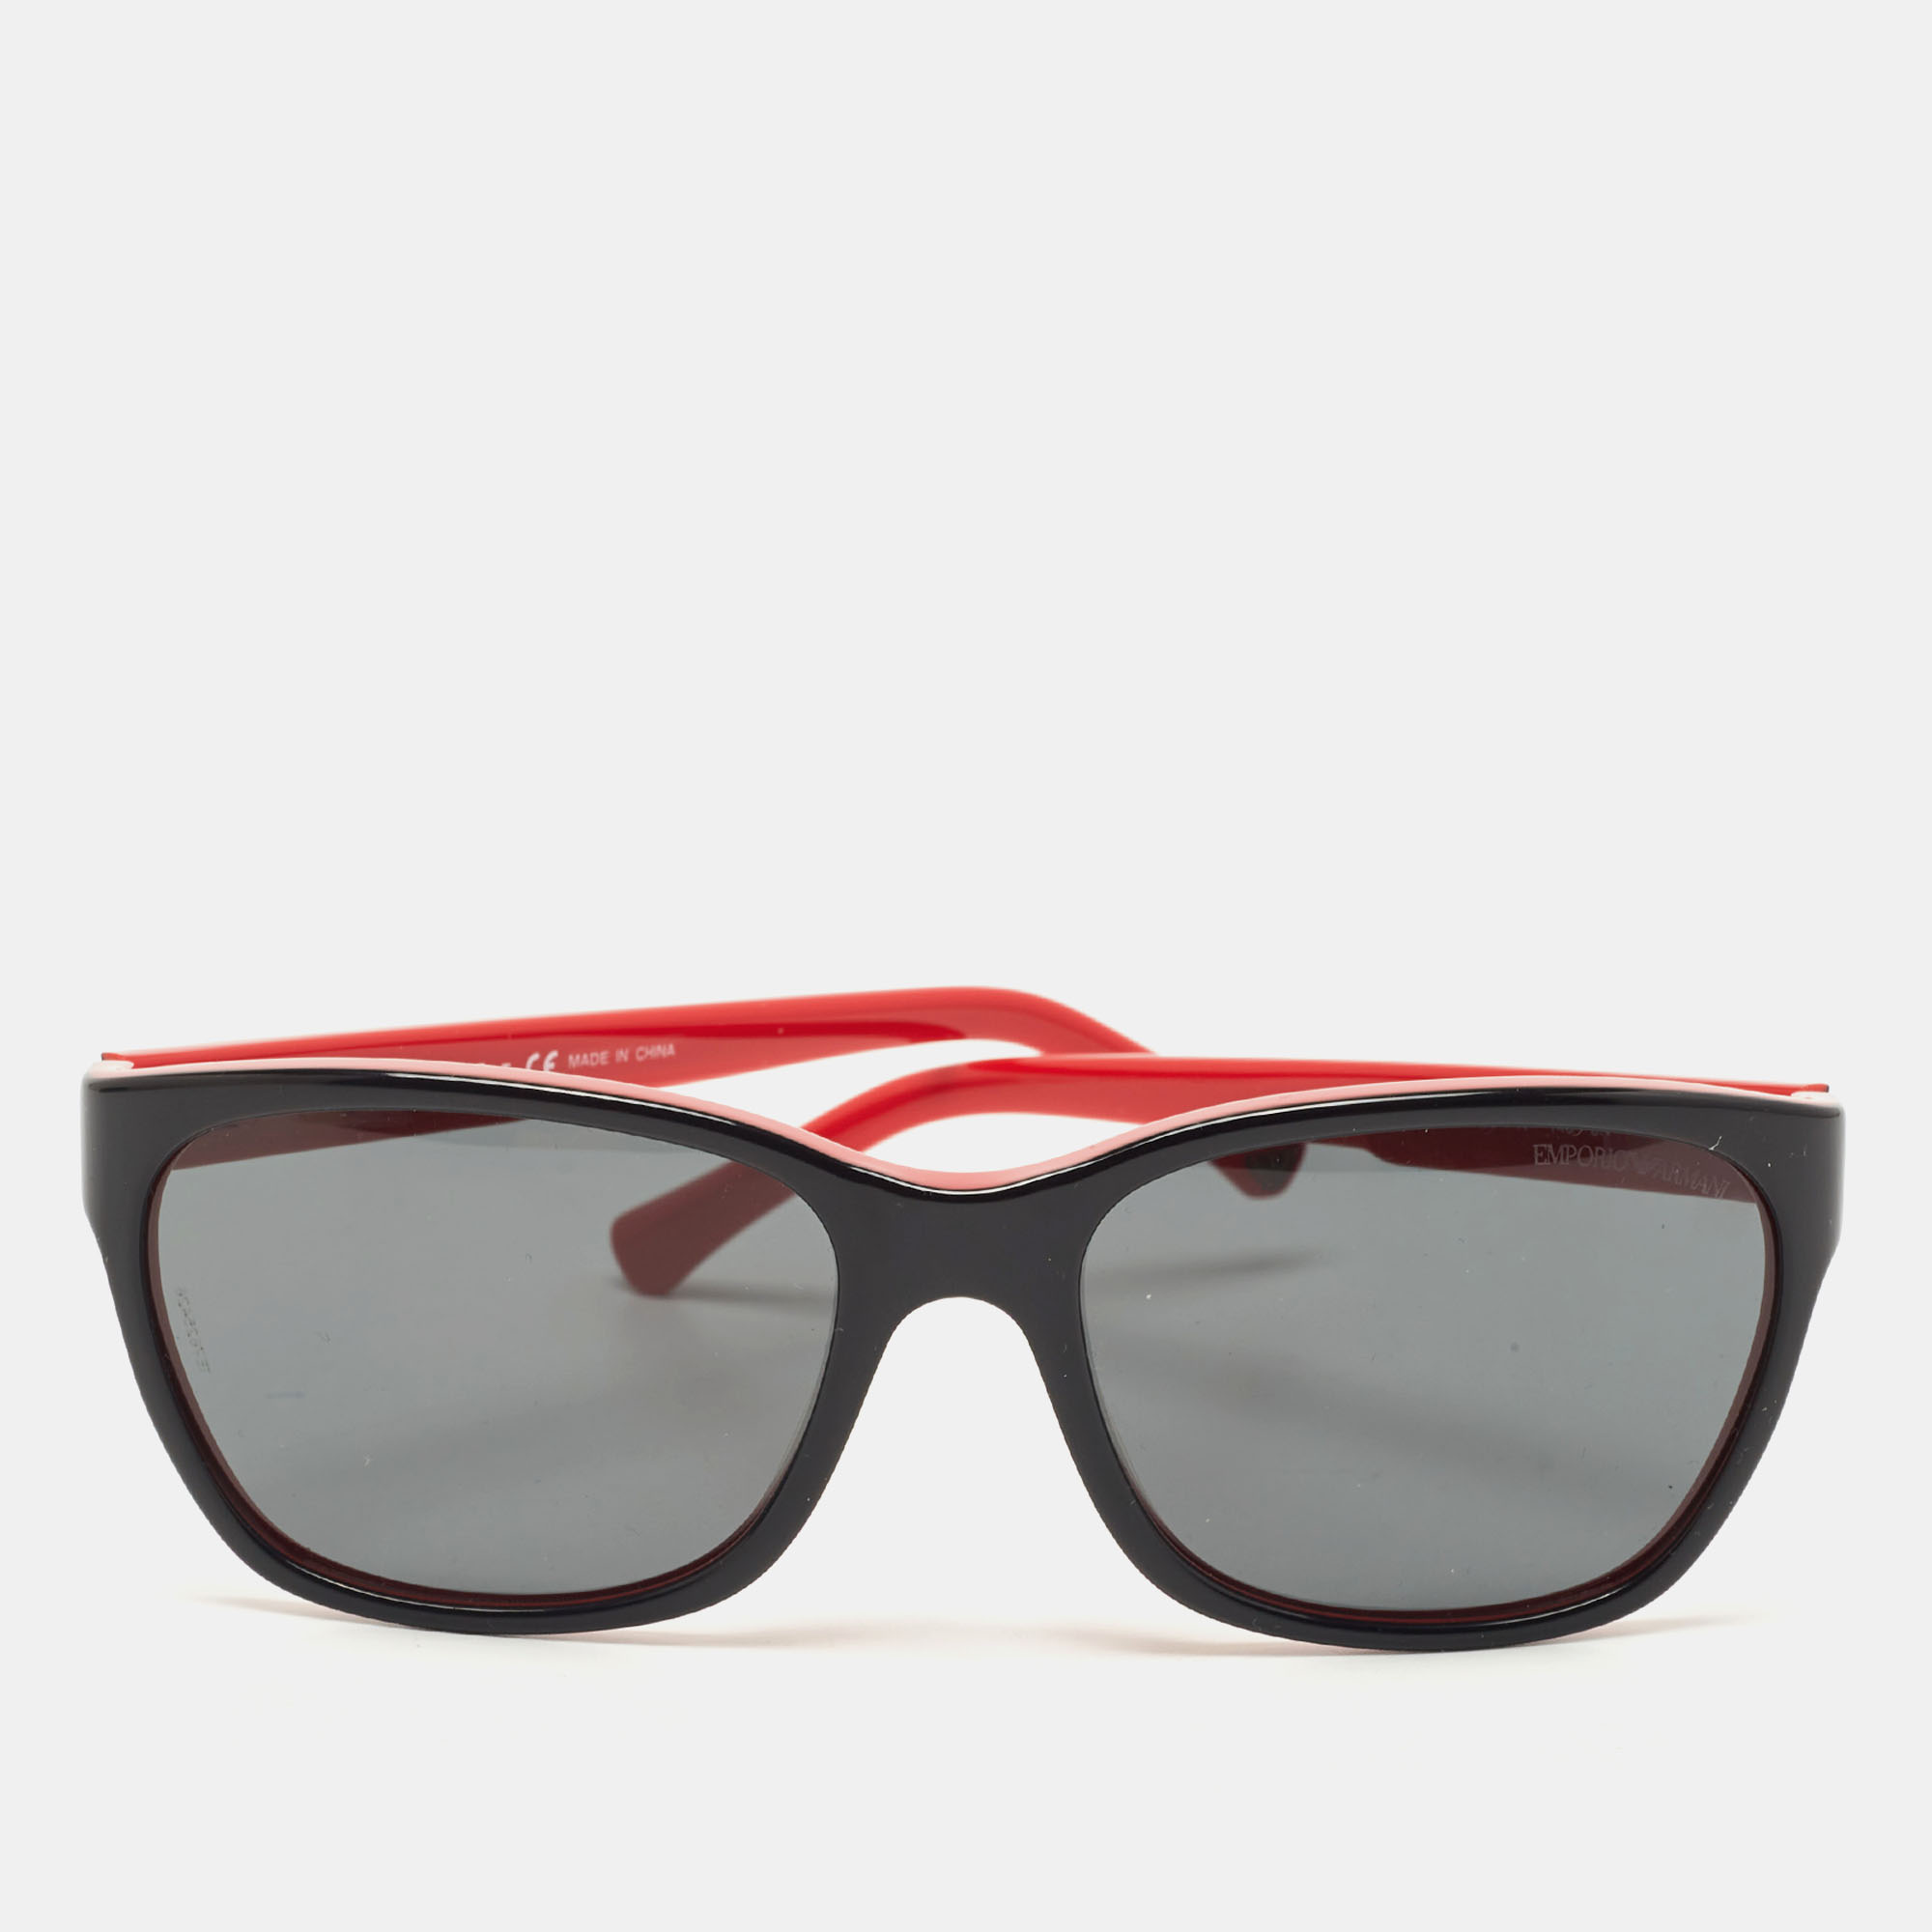 Emporio armani red/black gradient rectangular sunglasses